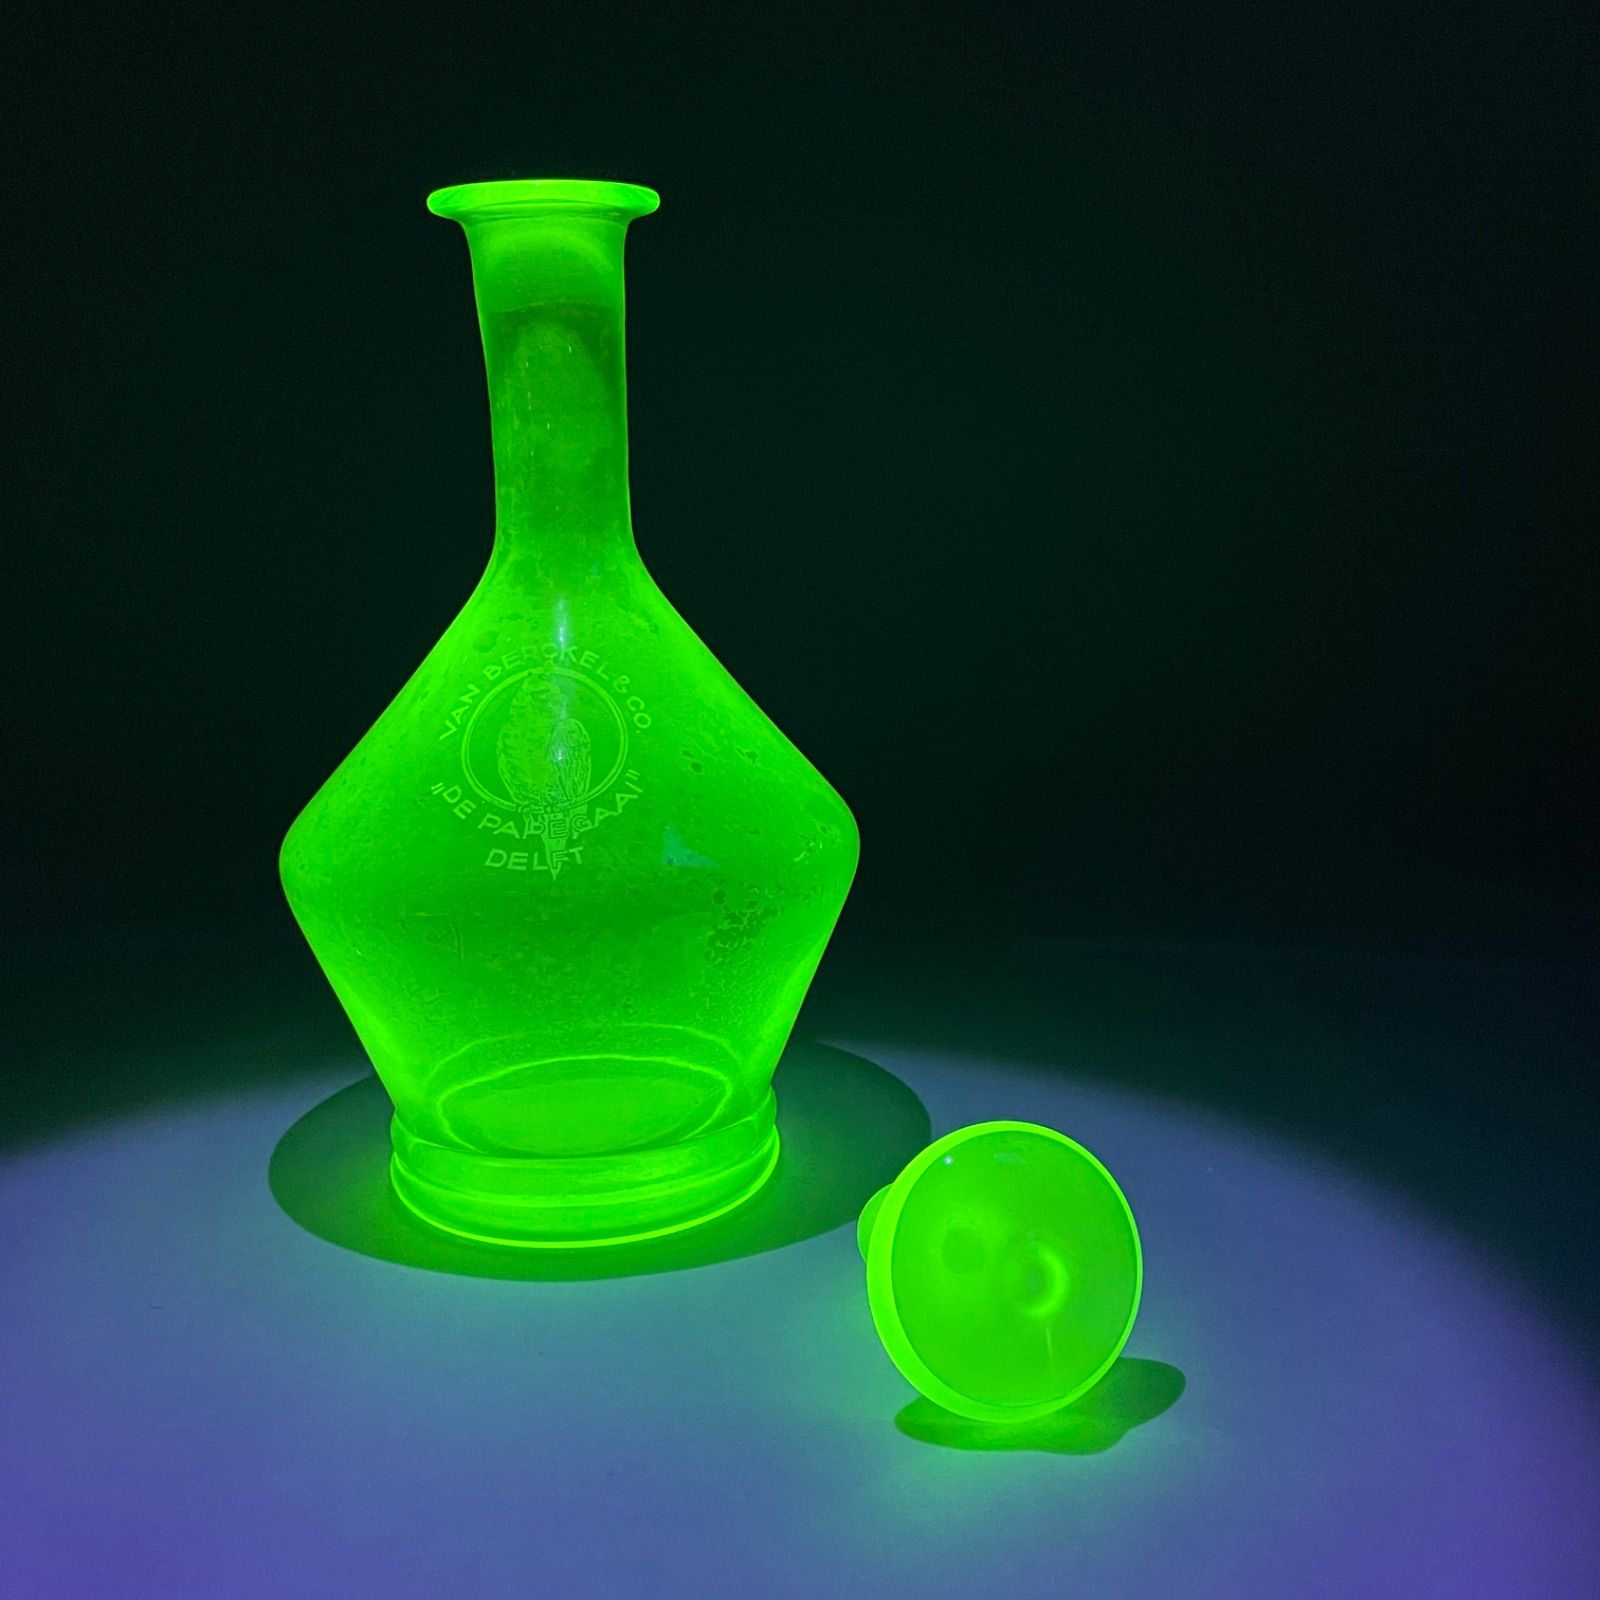 ◇ウランガラス デキャンタ瓶 1900年代初頭 オランダ製 希少品